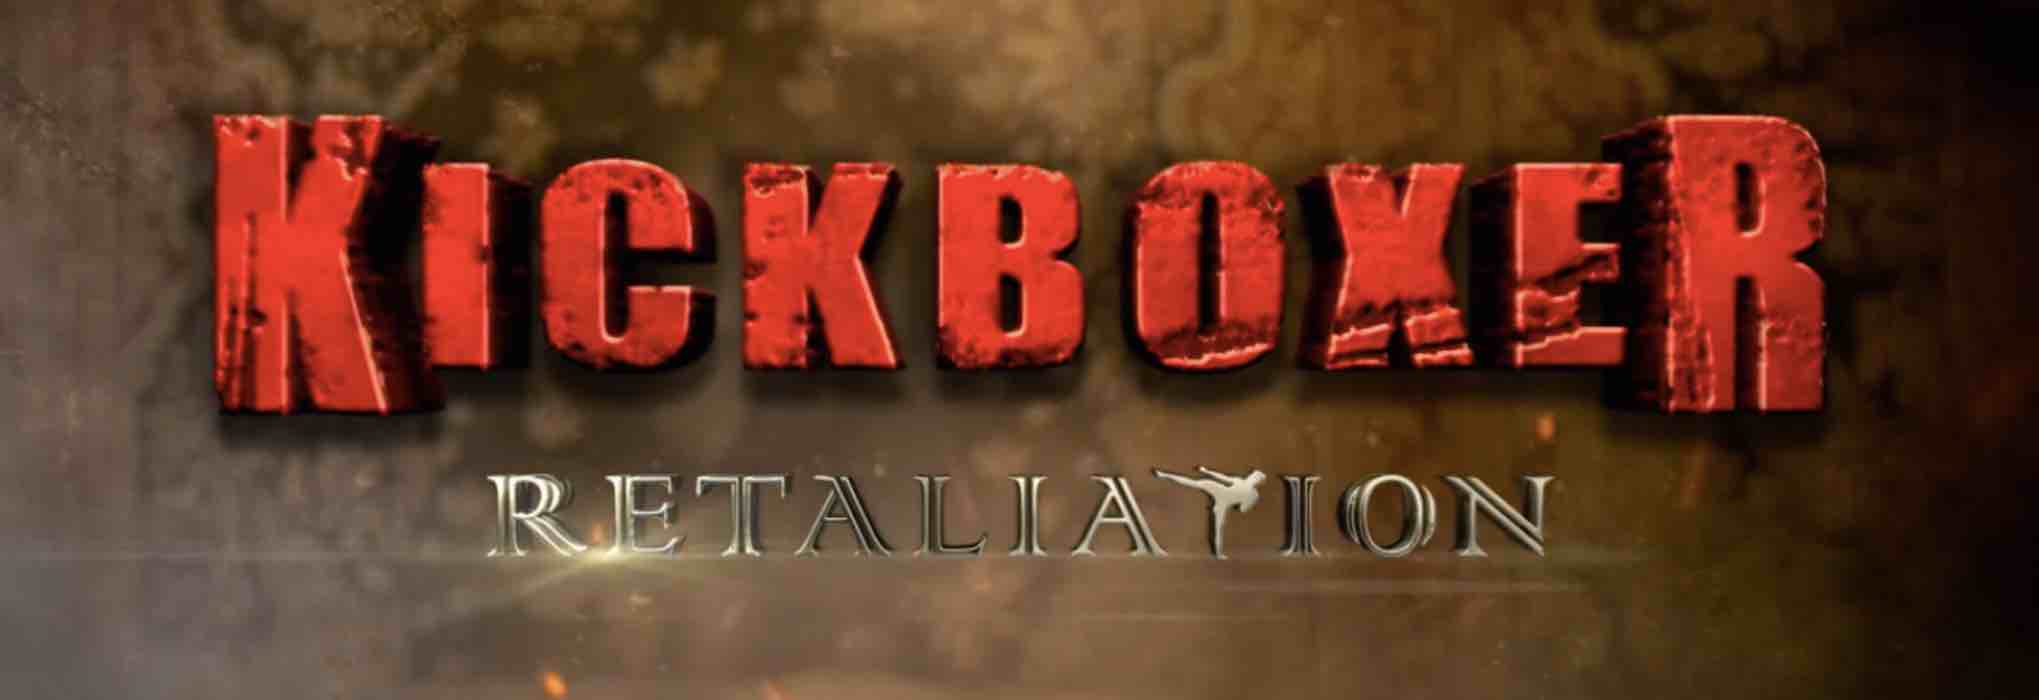 Kickboxer: Retaliation, trama, curiosità e info sul film in onda su Rai 4